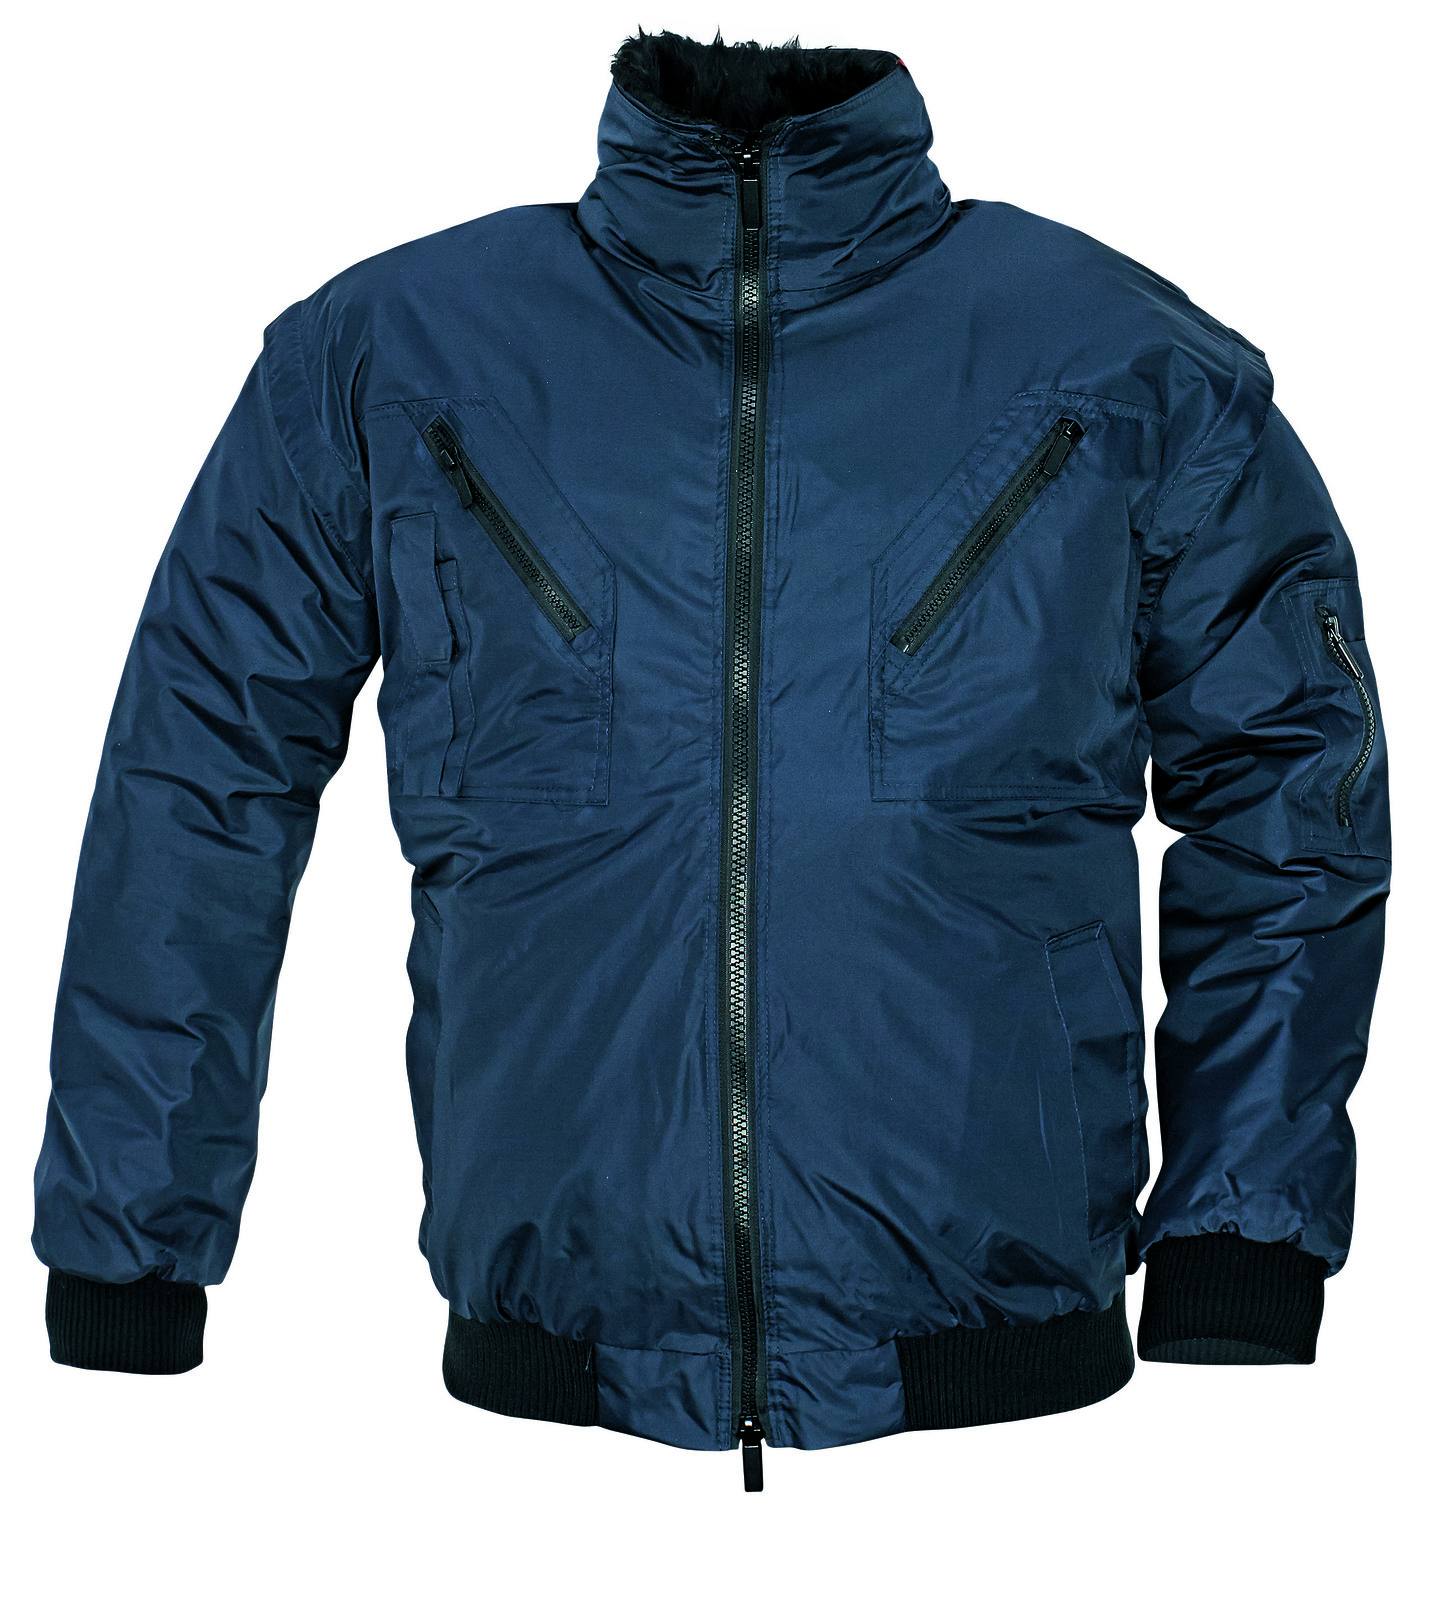 Zimná bunda a vesta Pilot 3v1 pánska - veľkosť: XL, farba: navy